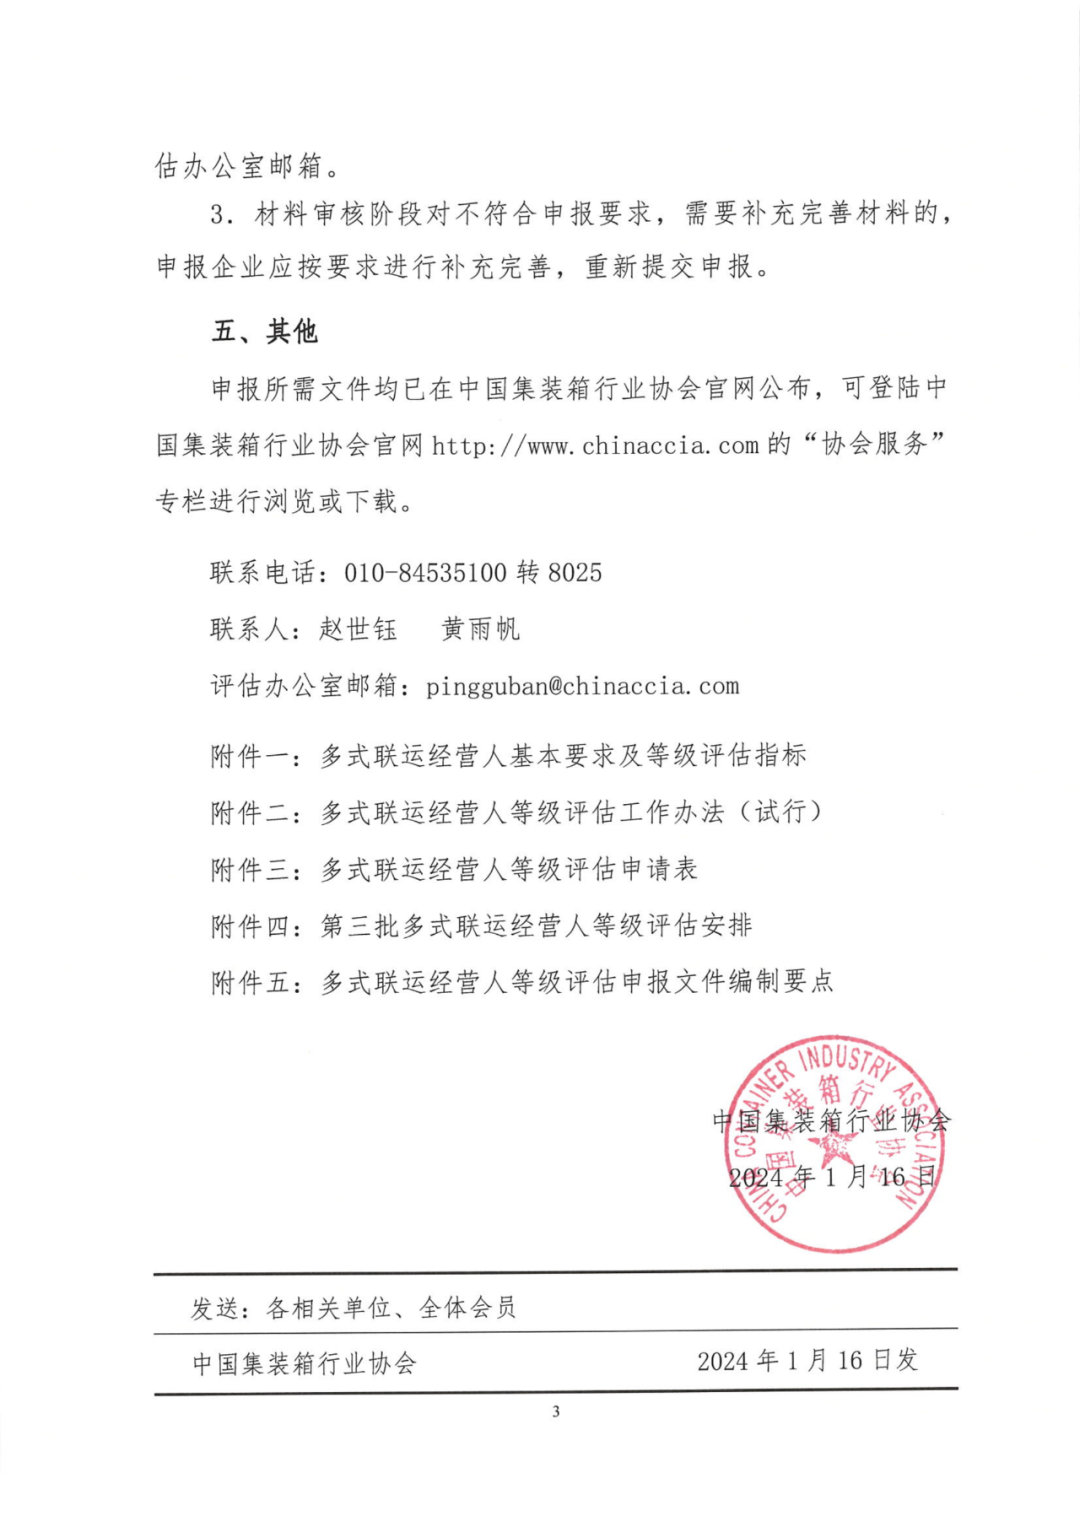 中国集装箱行业协会第三批多式联运经营人等级评估工作正式启动(图9)